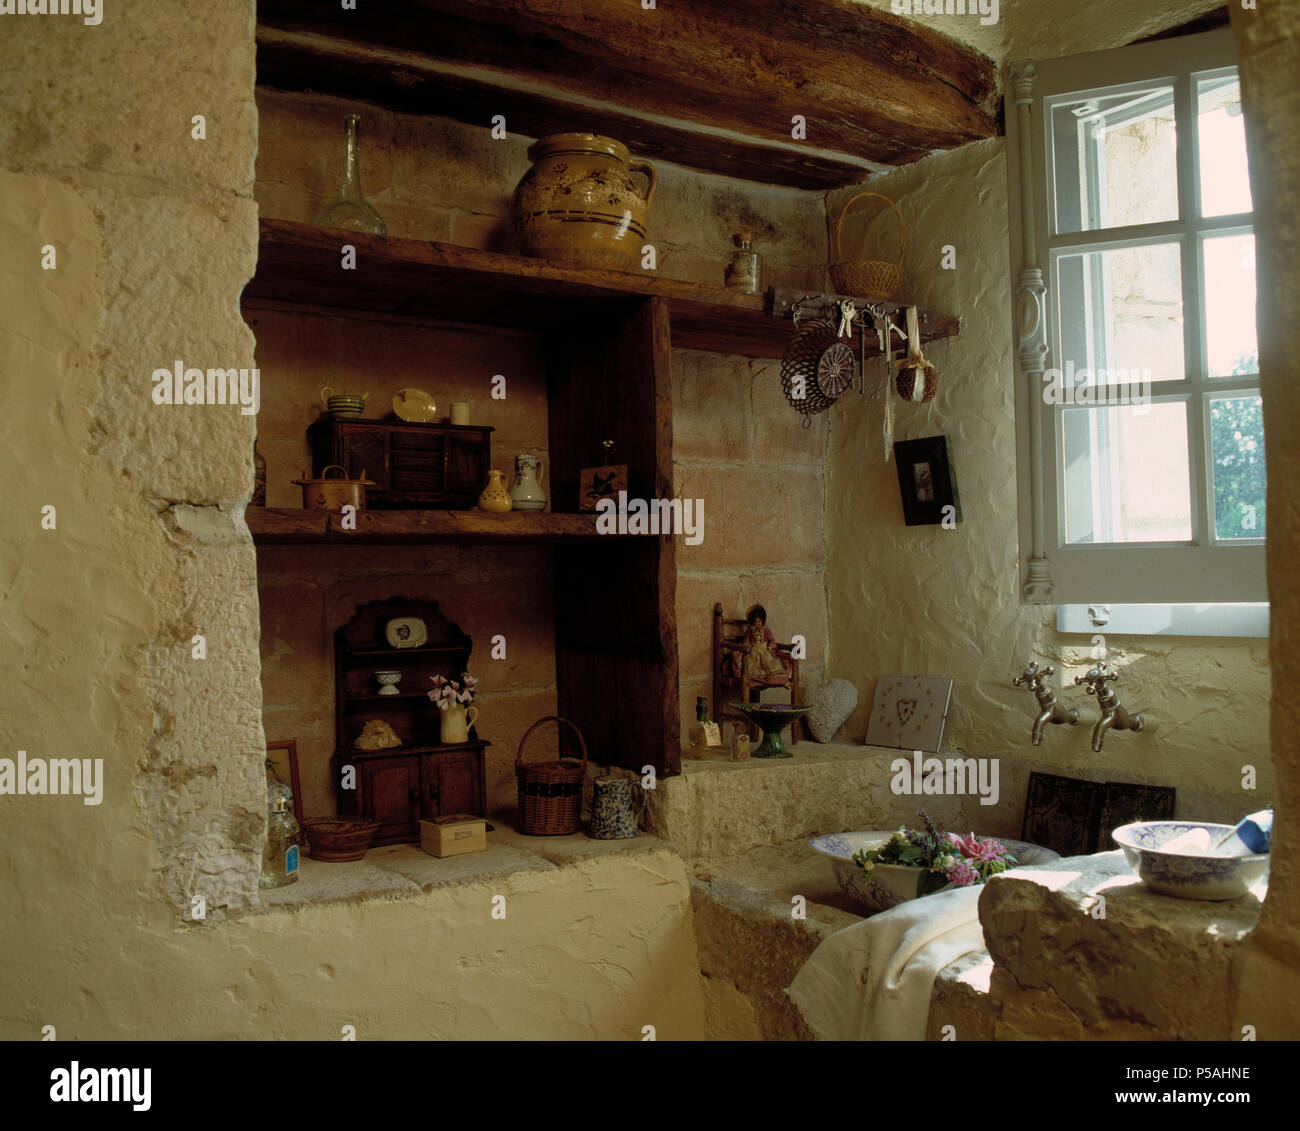 Holzfachböden in Alkoven im alten französischen Küche mit Waschbecken aus Stein unter Fenster Stockfoto